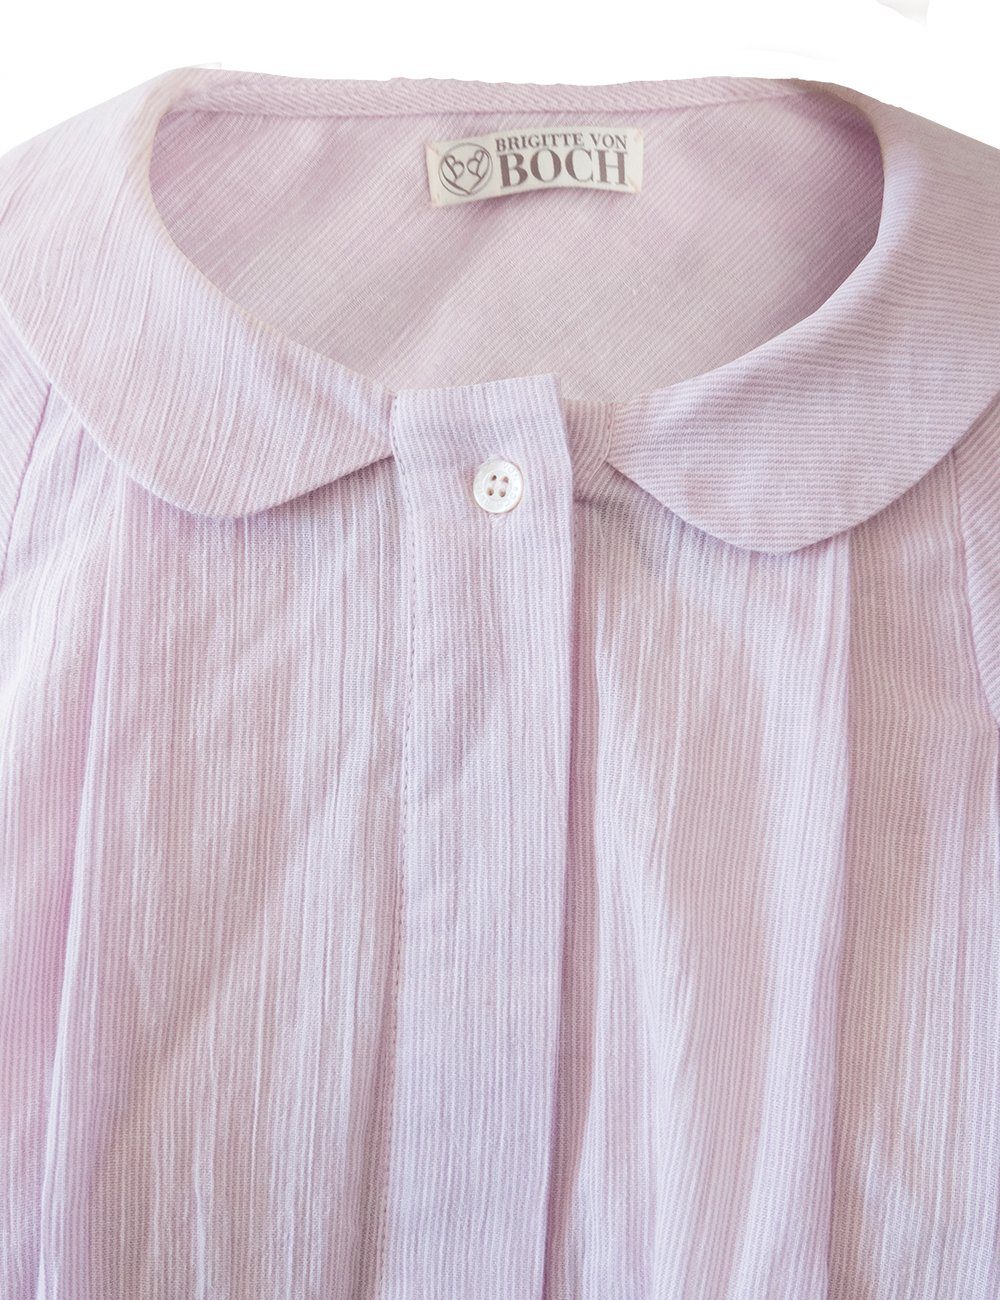 von rosa/weiß Hemdbluse Brigitte Boch gestreift Bluse Morongo